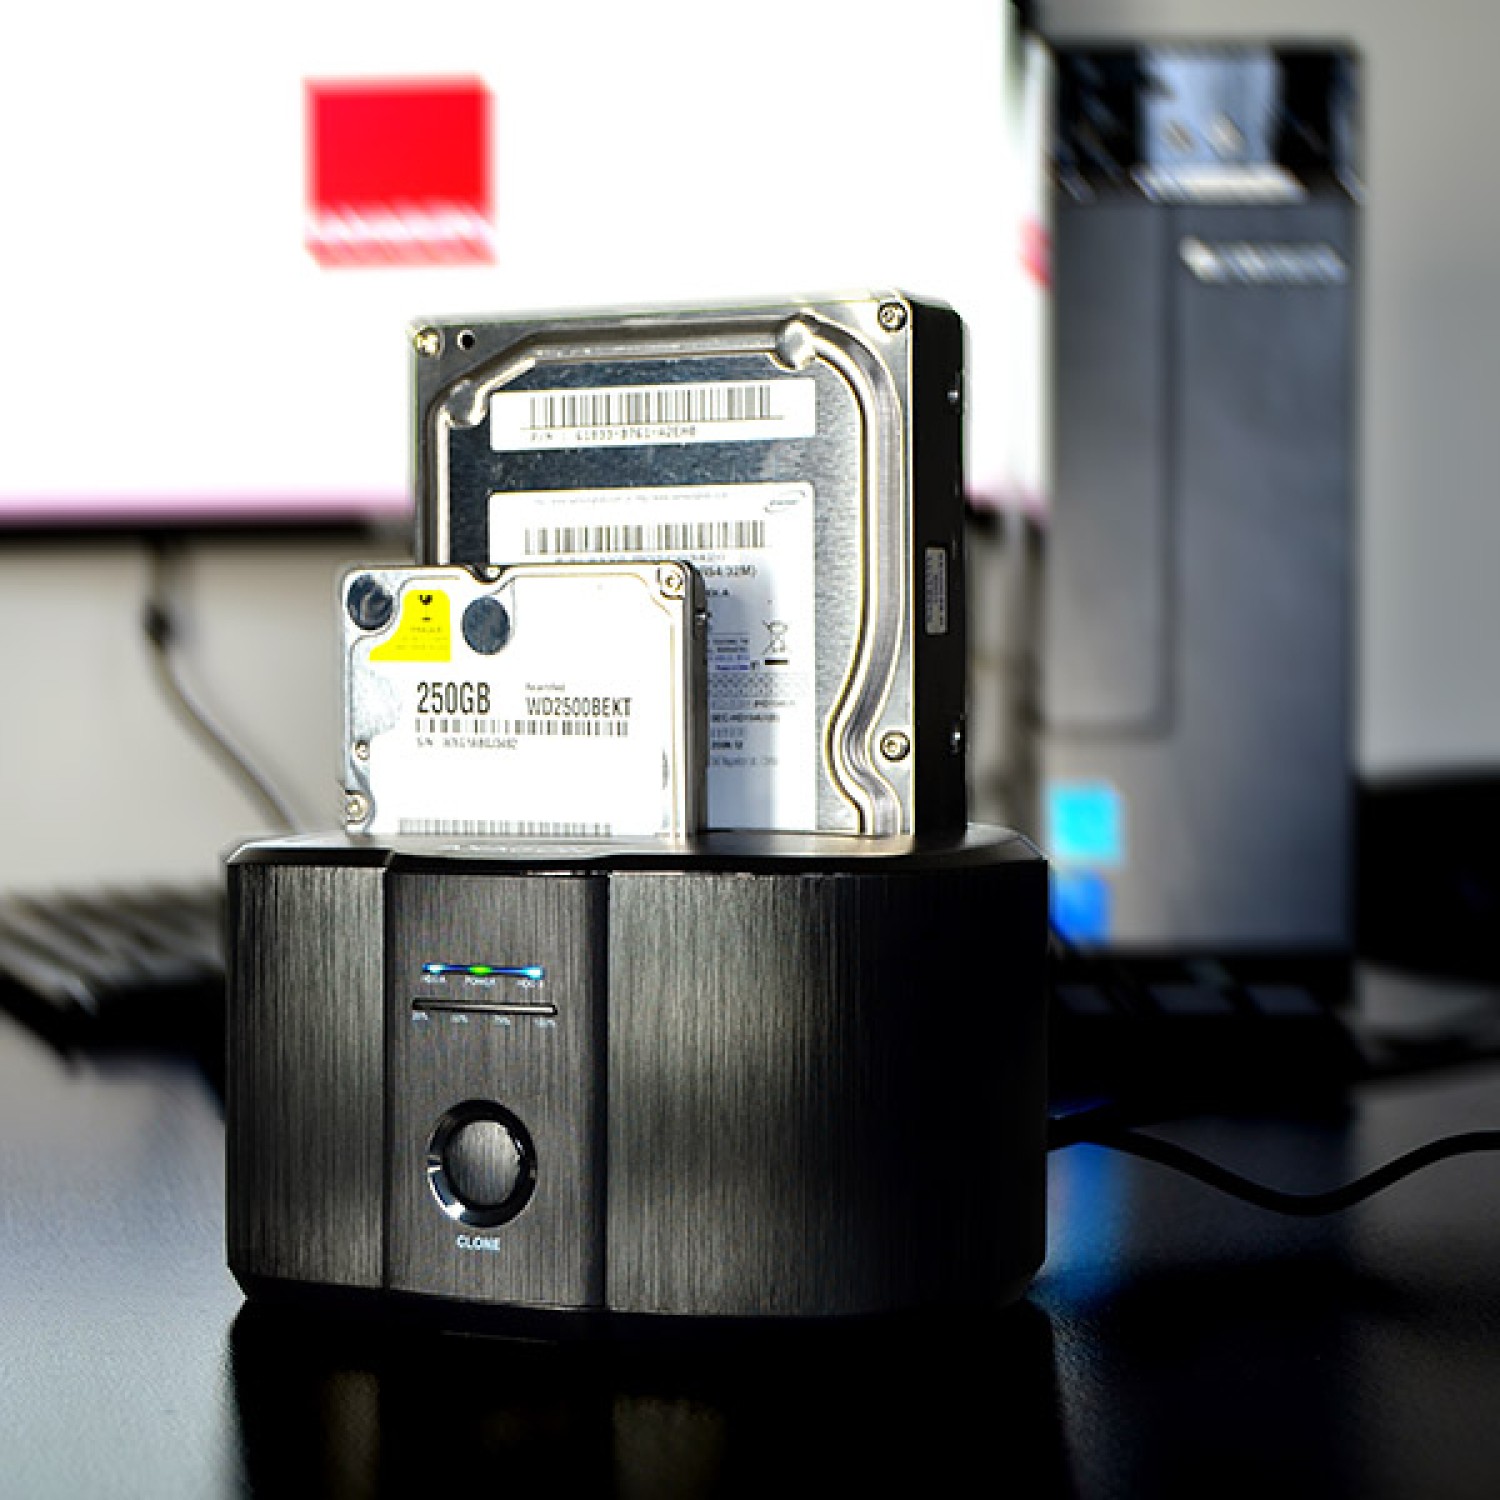 da uživate v hitrosti sodobnih pogonov SSD. Enostavno in hitro kloniranje vsebine priključenih pogonov brez potrebe po povezavi z osebnim računalnikom. Dock HDD se lahko uporablja kot avtonomna naprava za udobno ustvarjanje slike diska. Hitrost kloniranja SSD-ja do 300 MB/s.Branje S.M.A.R.T. informacije